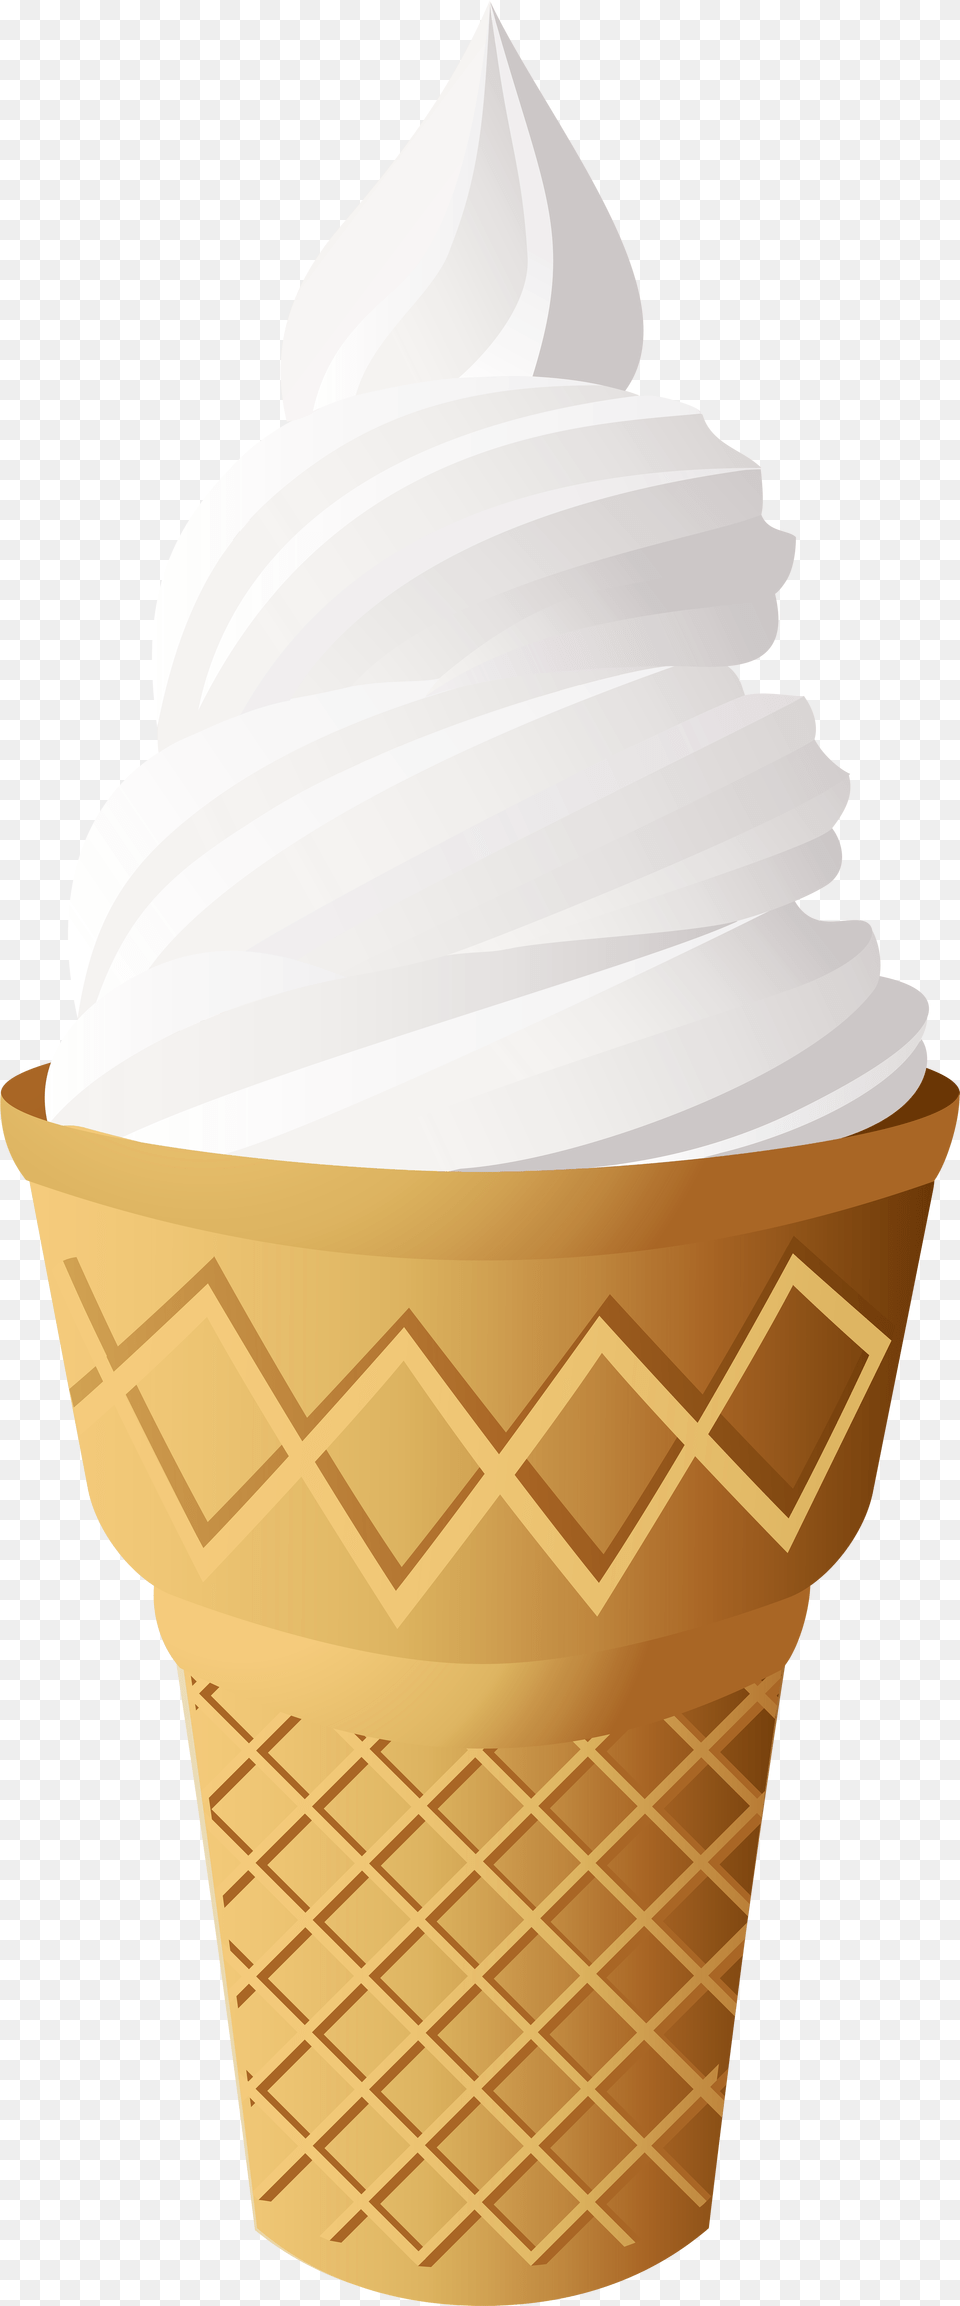 Vanilla Ice Cream Cone Clip Art Ice Cream Illustration Tutorial, Dessert, Food, Ice Cream, Soft Serve Ice Cream Free Png Download